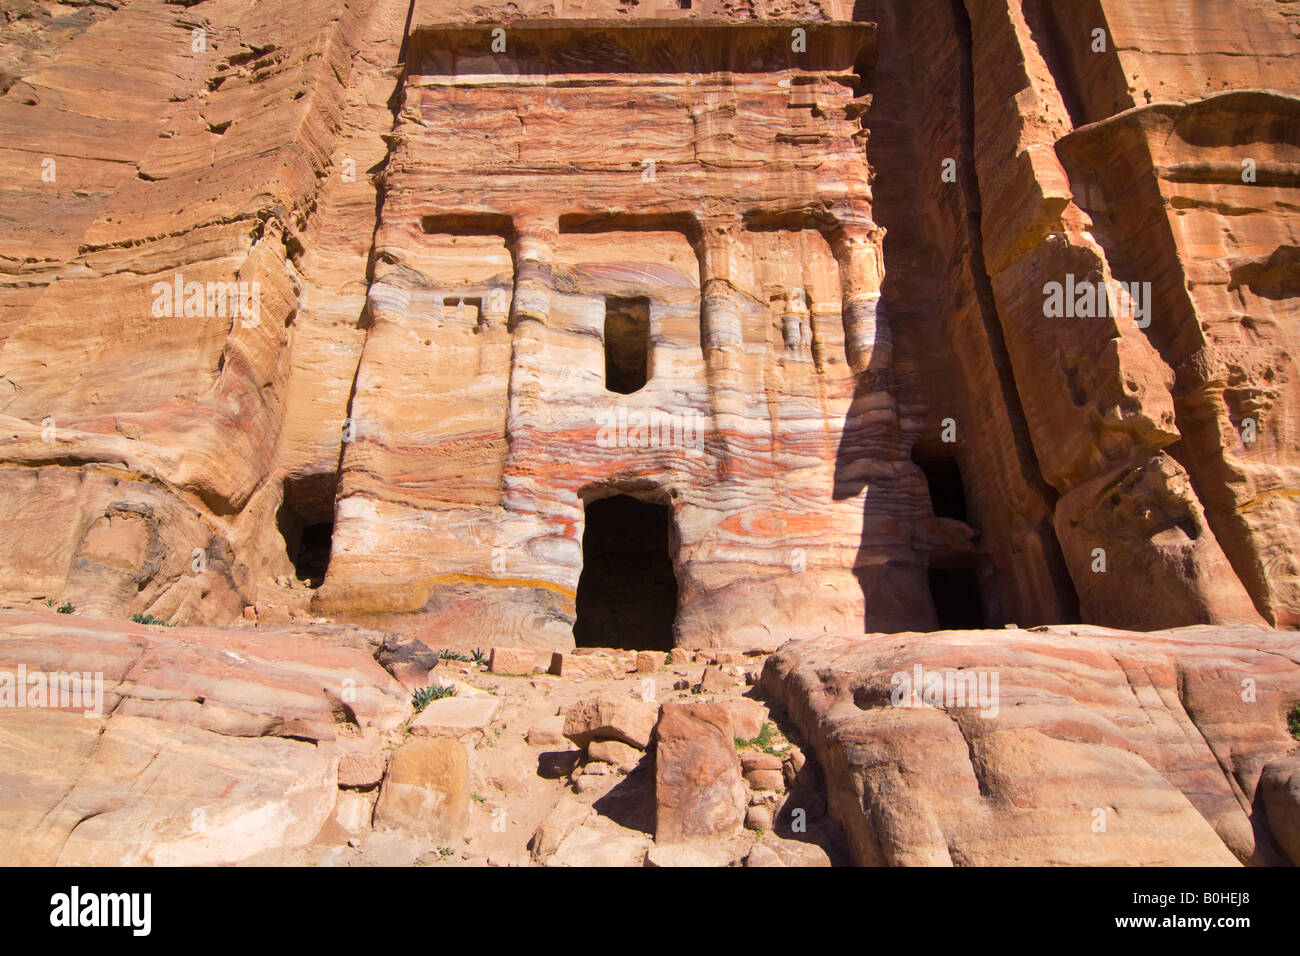 Tumbas cortadas en acantilados, roca en Petra, Jordania, Oriente Medio Foto de stock